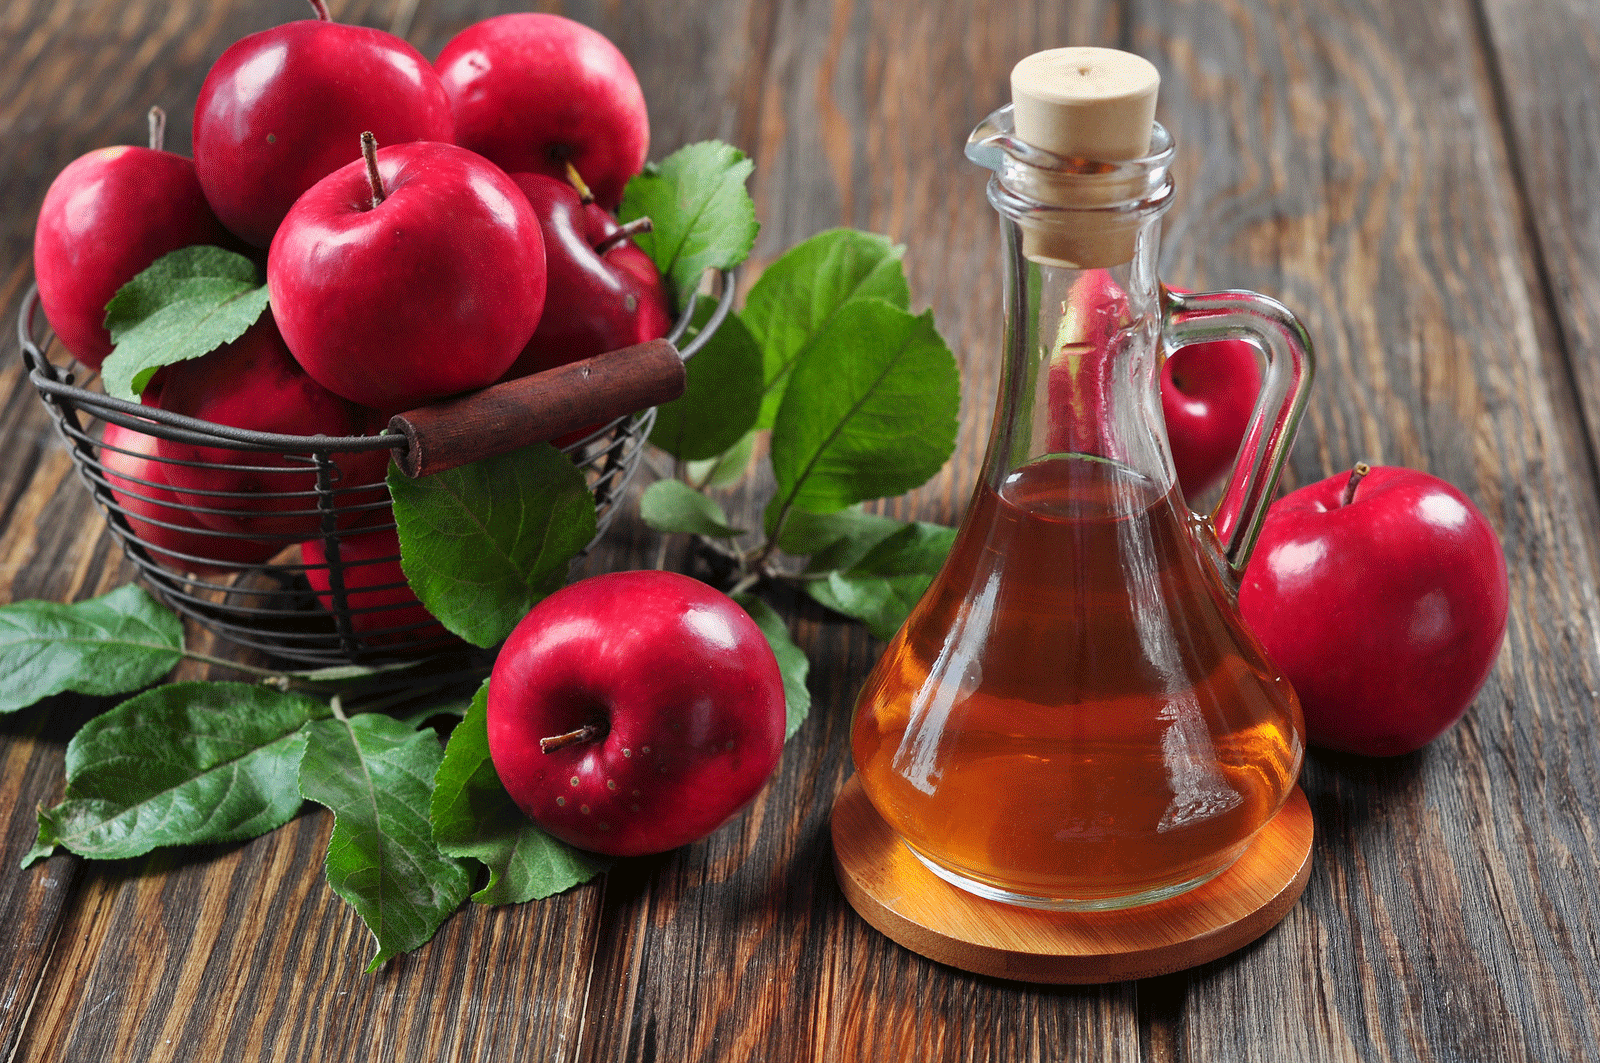 تعرف معنا على اسرار خل التفاح وفوائد المذهلة للصحة